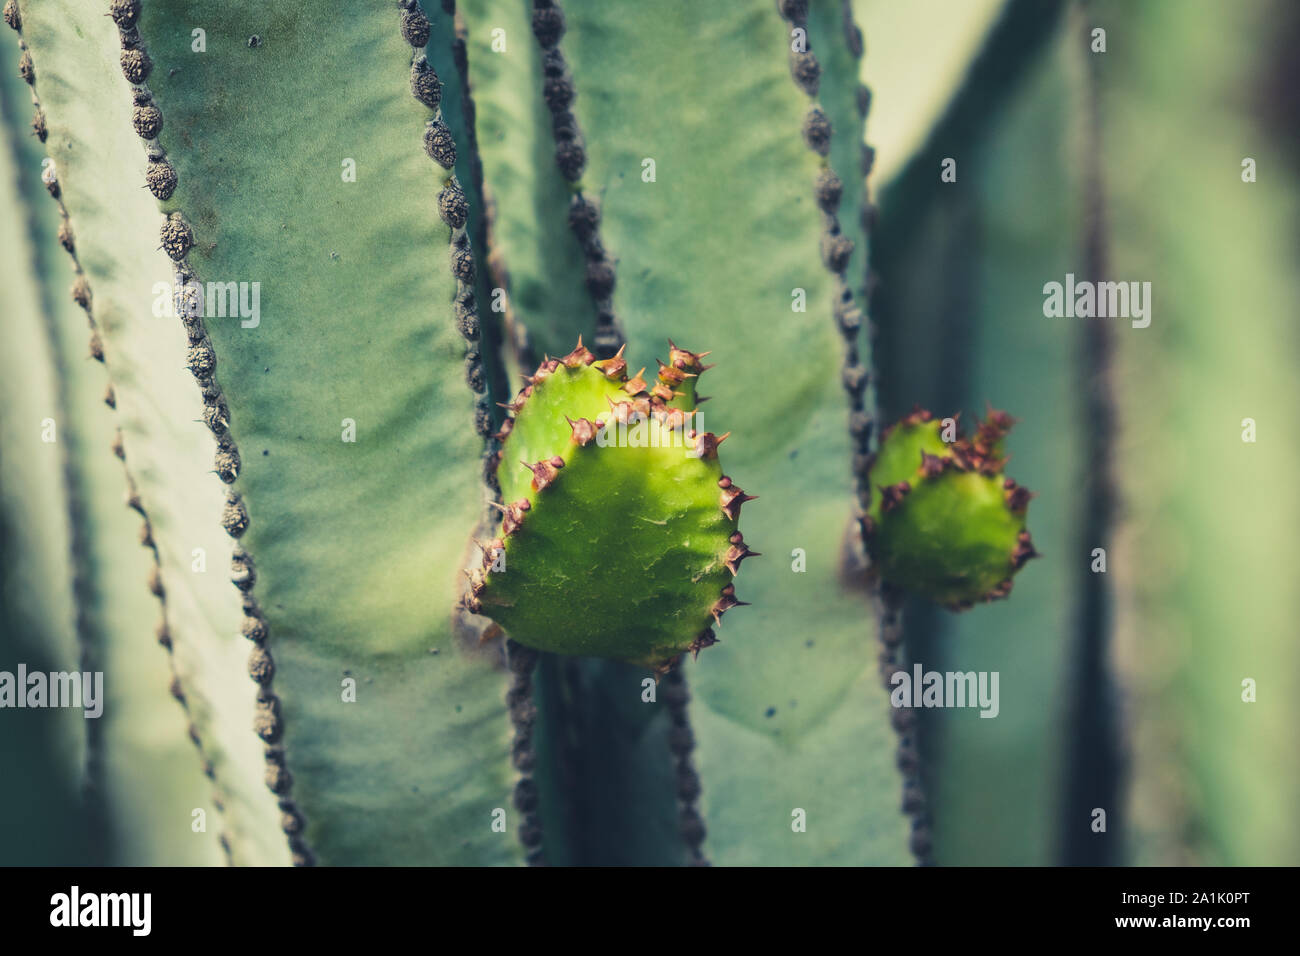 Piante di cactus dettaglio - impianto di cactus closeup Foto Stock